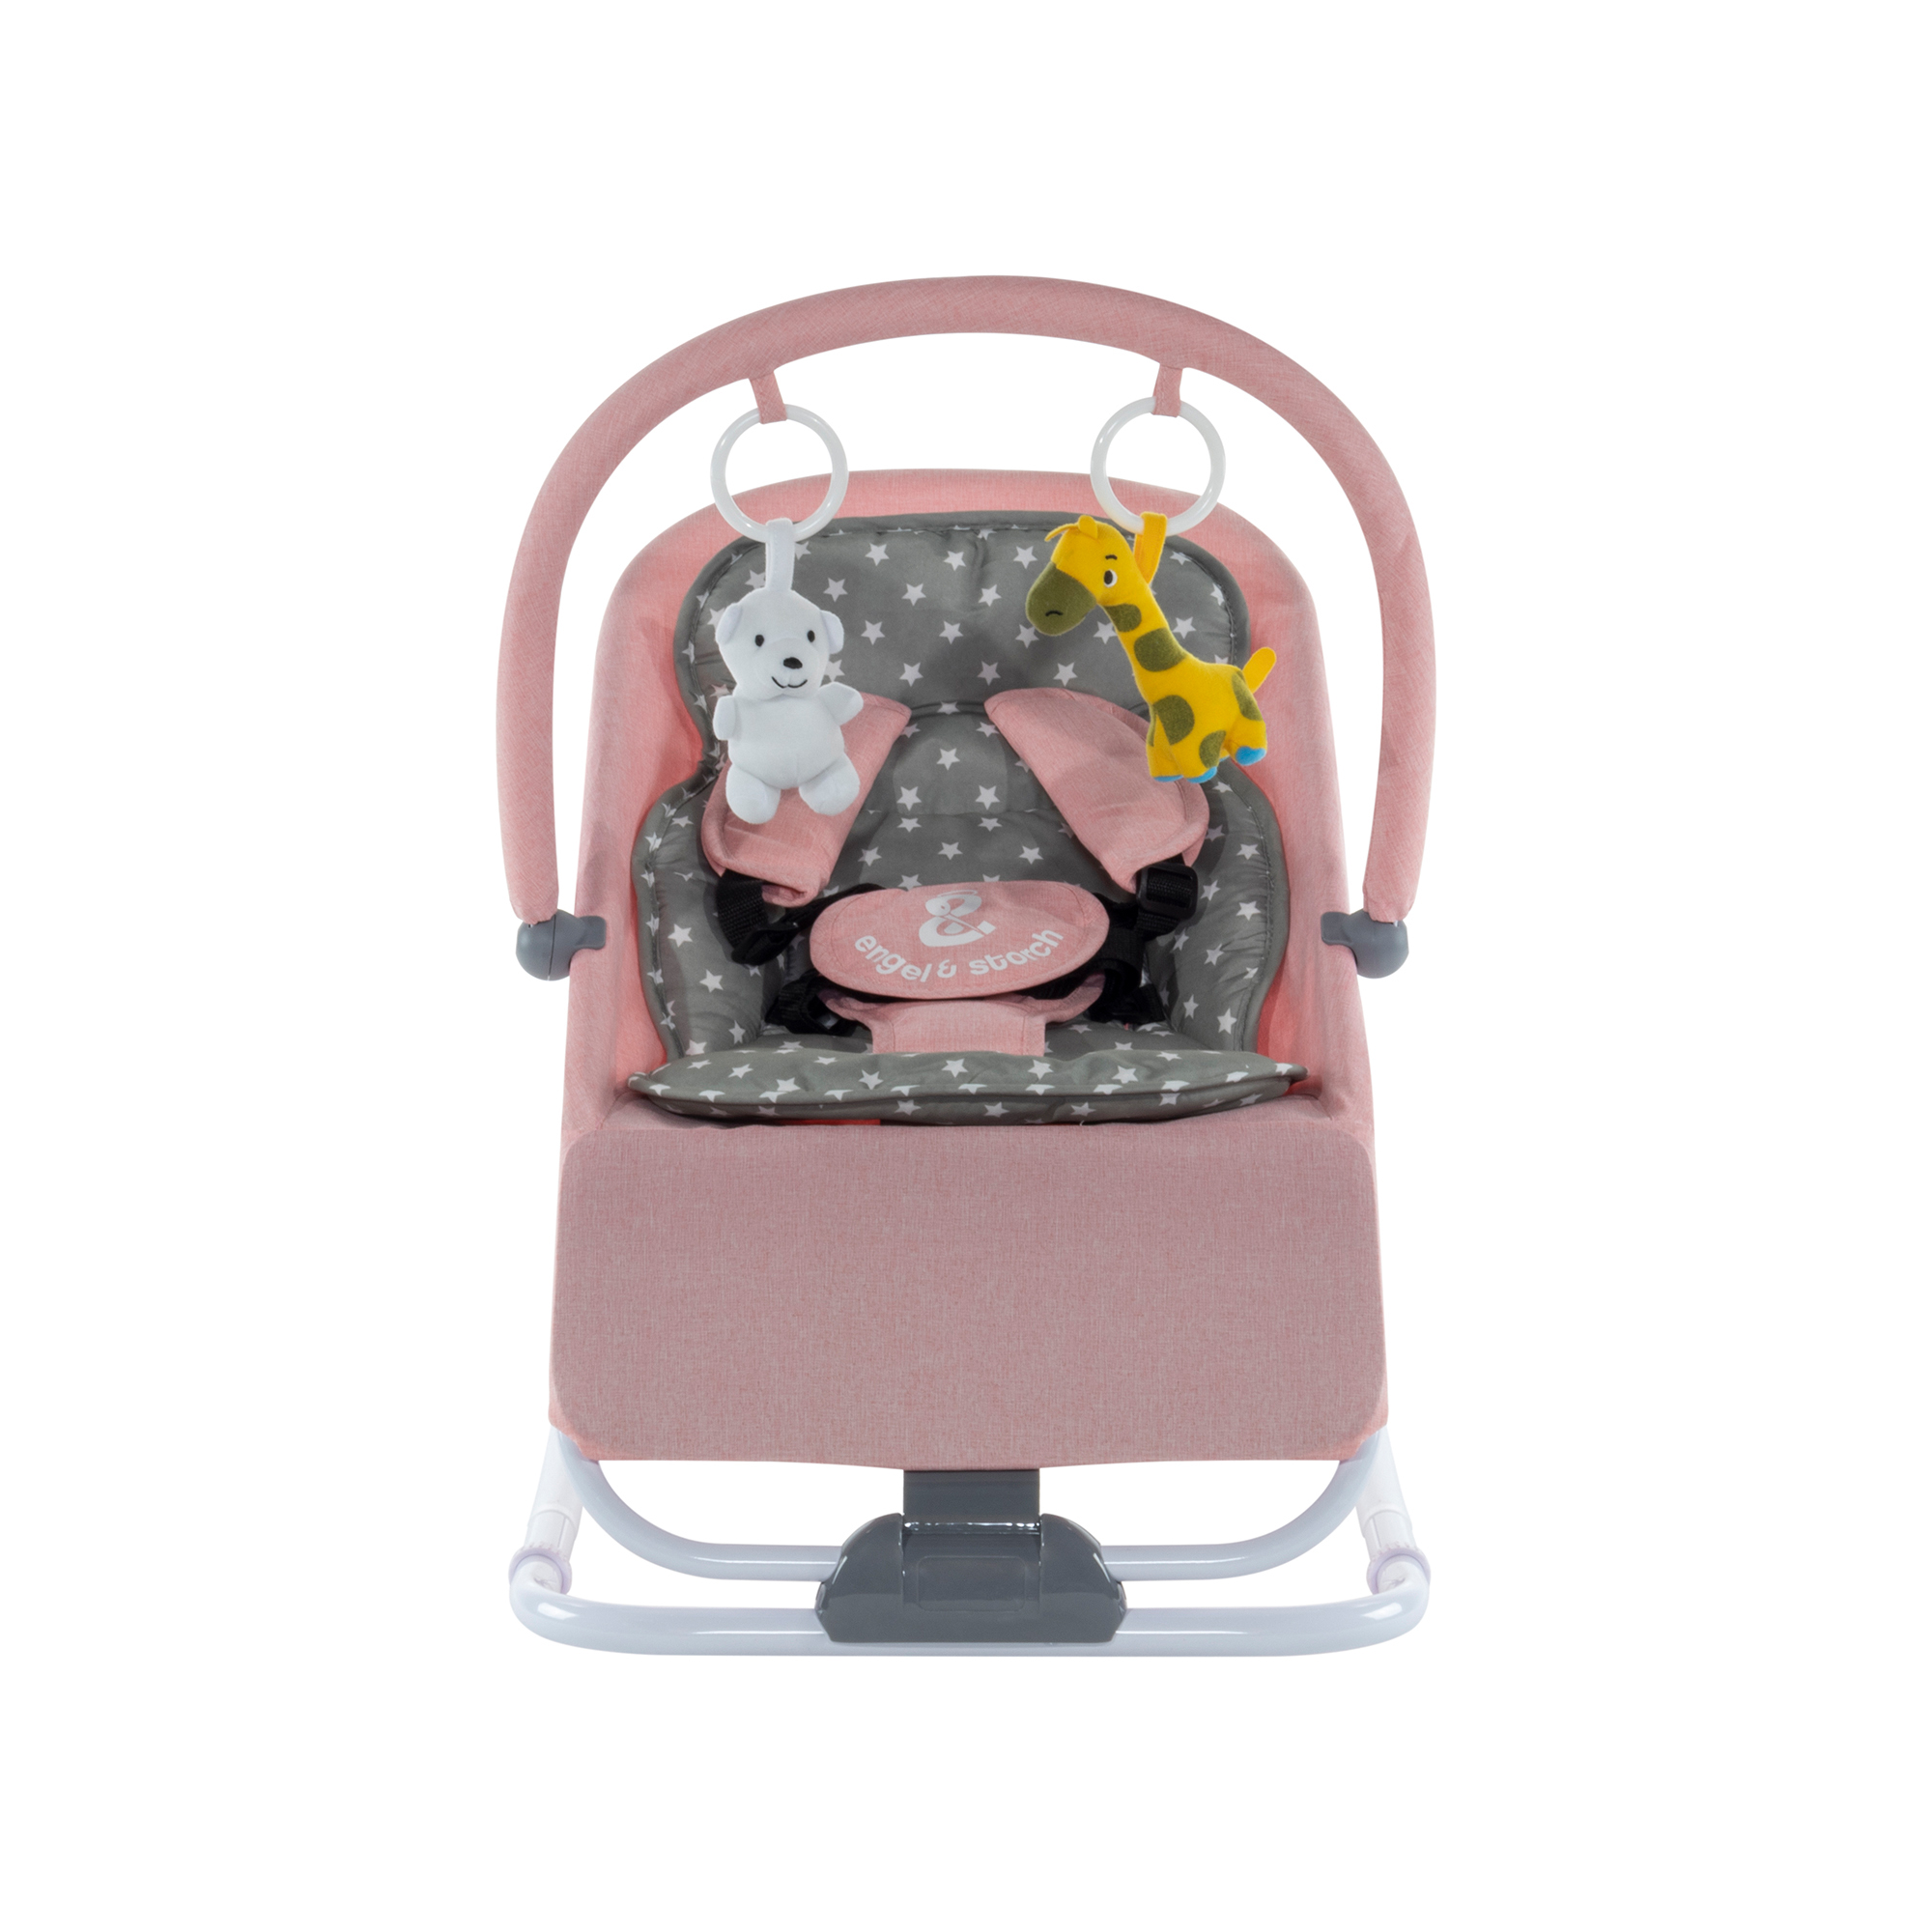 Babywippe VIENO mit abnehmbarem Bezug und Spielebogen Rosa + Grau weiße Sterne